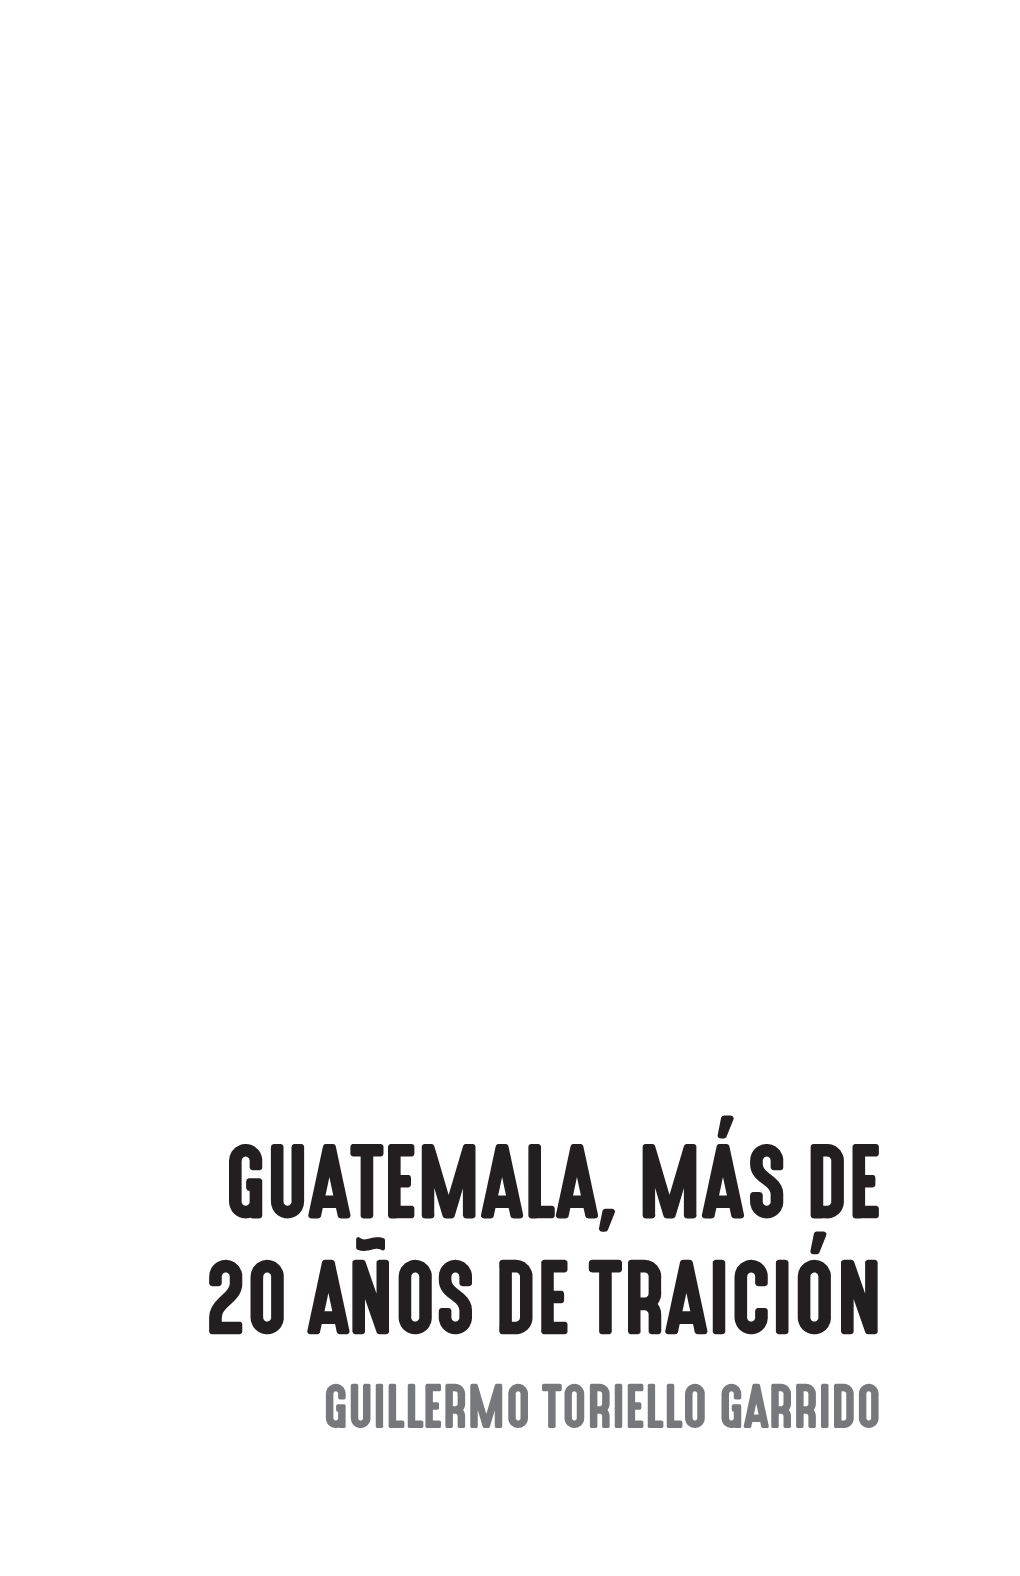 Guillermo Toriello Garrido Isbn: 978-9929-702-10-3